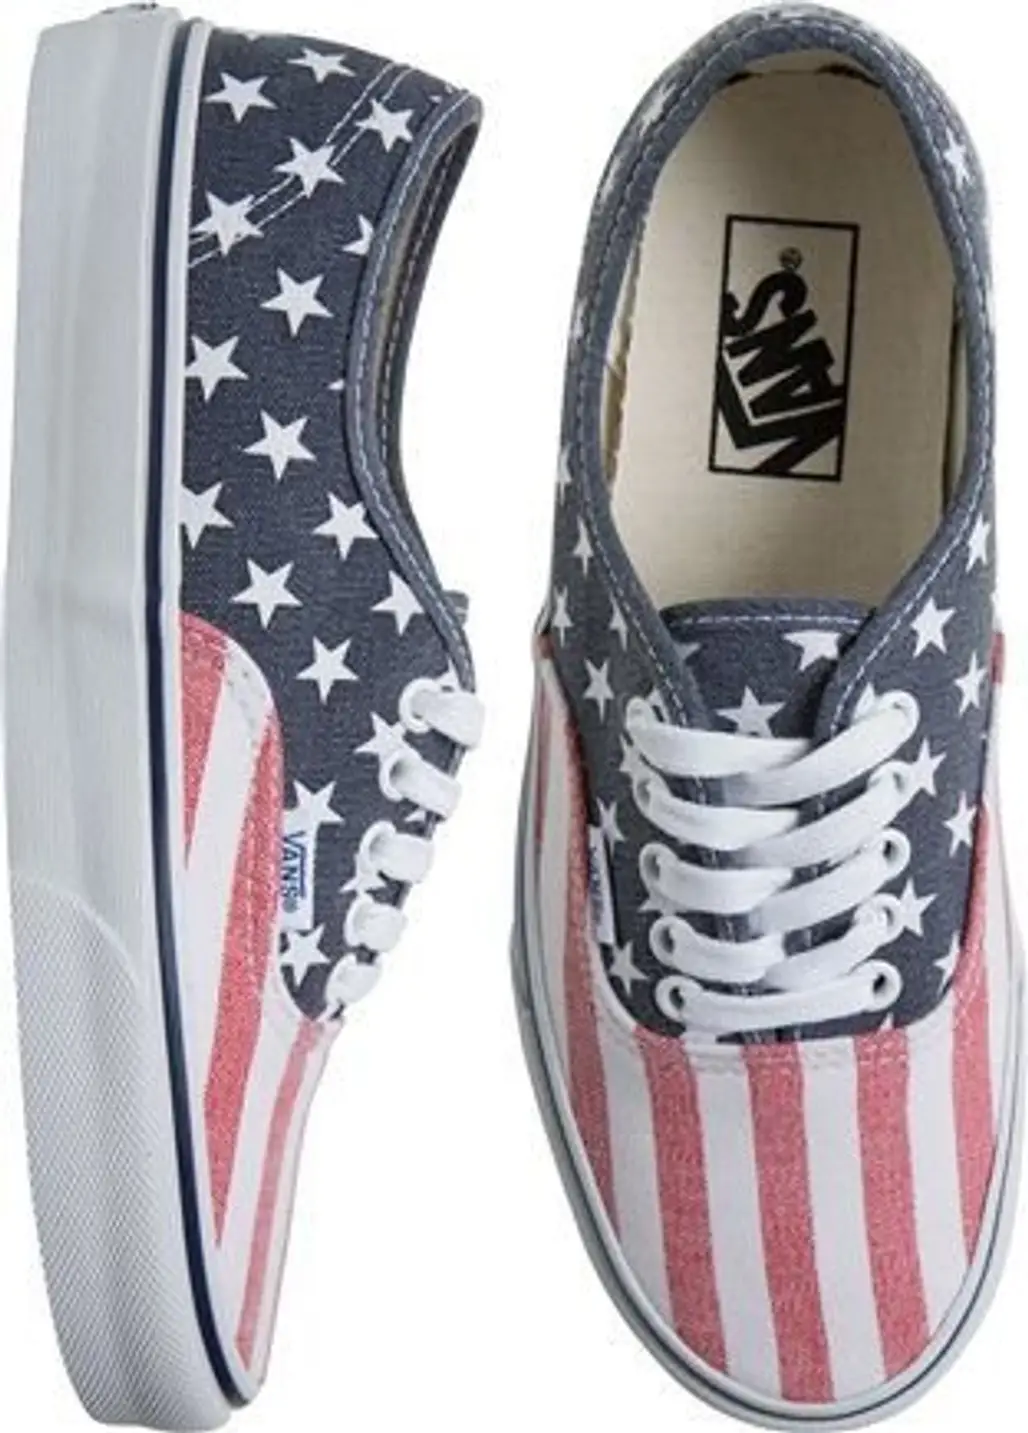 Vans American Flag Printed Shoe